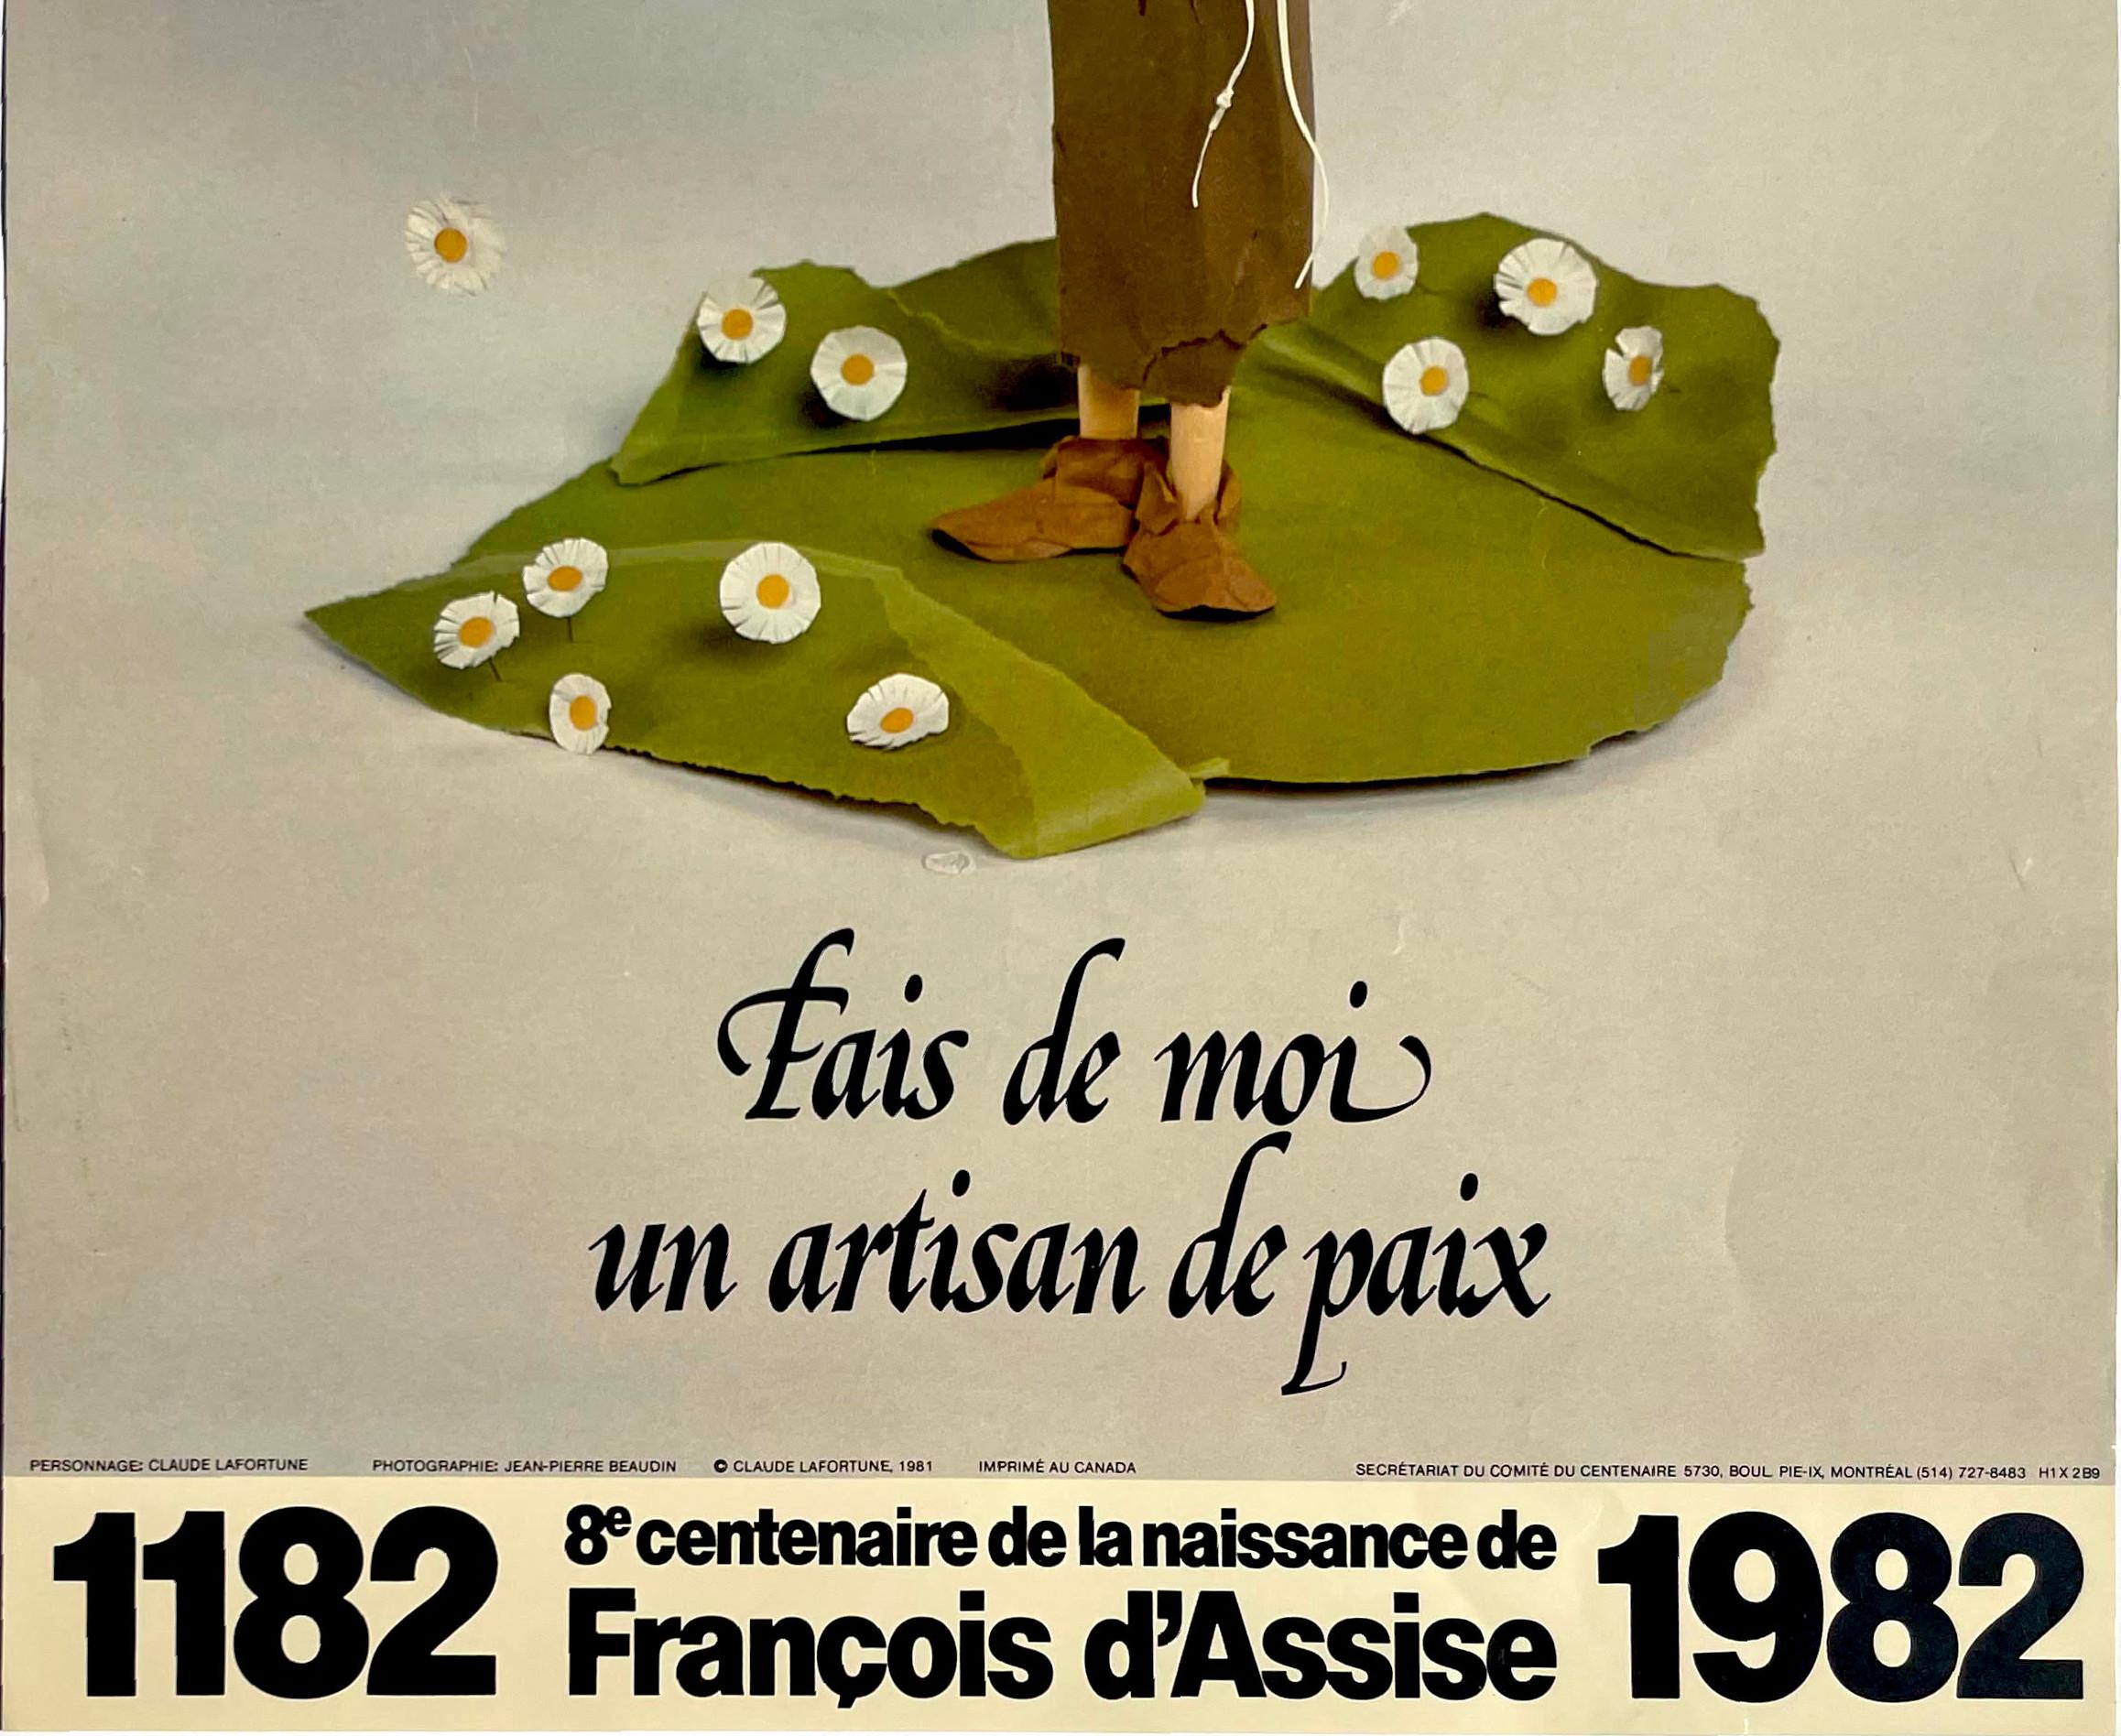 8e centenaire de la naissance de François d'Assise, rare vintage Canadian poster - Print by Claude Lafortune